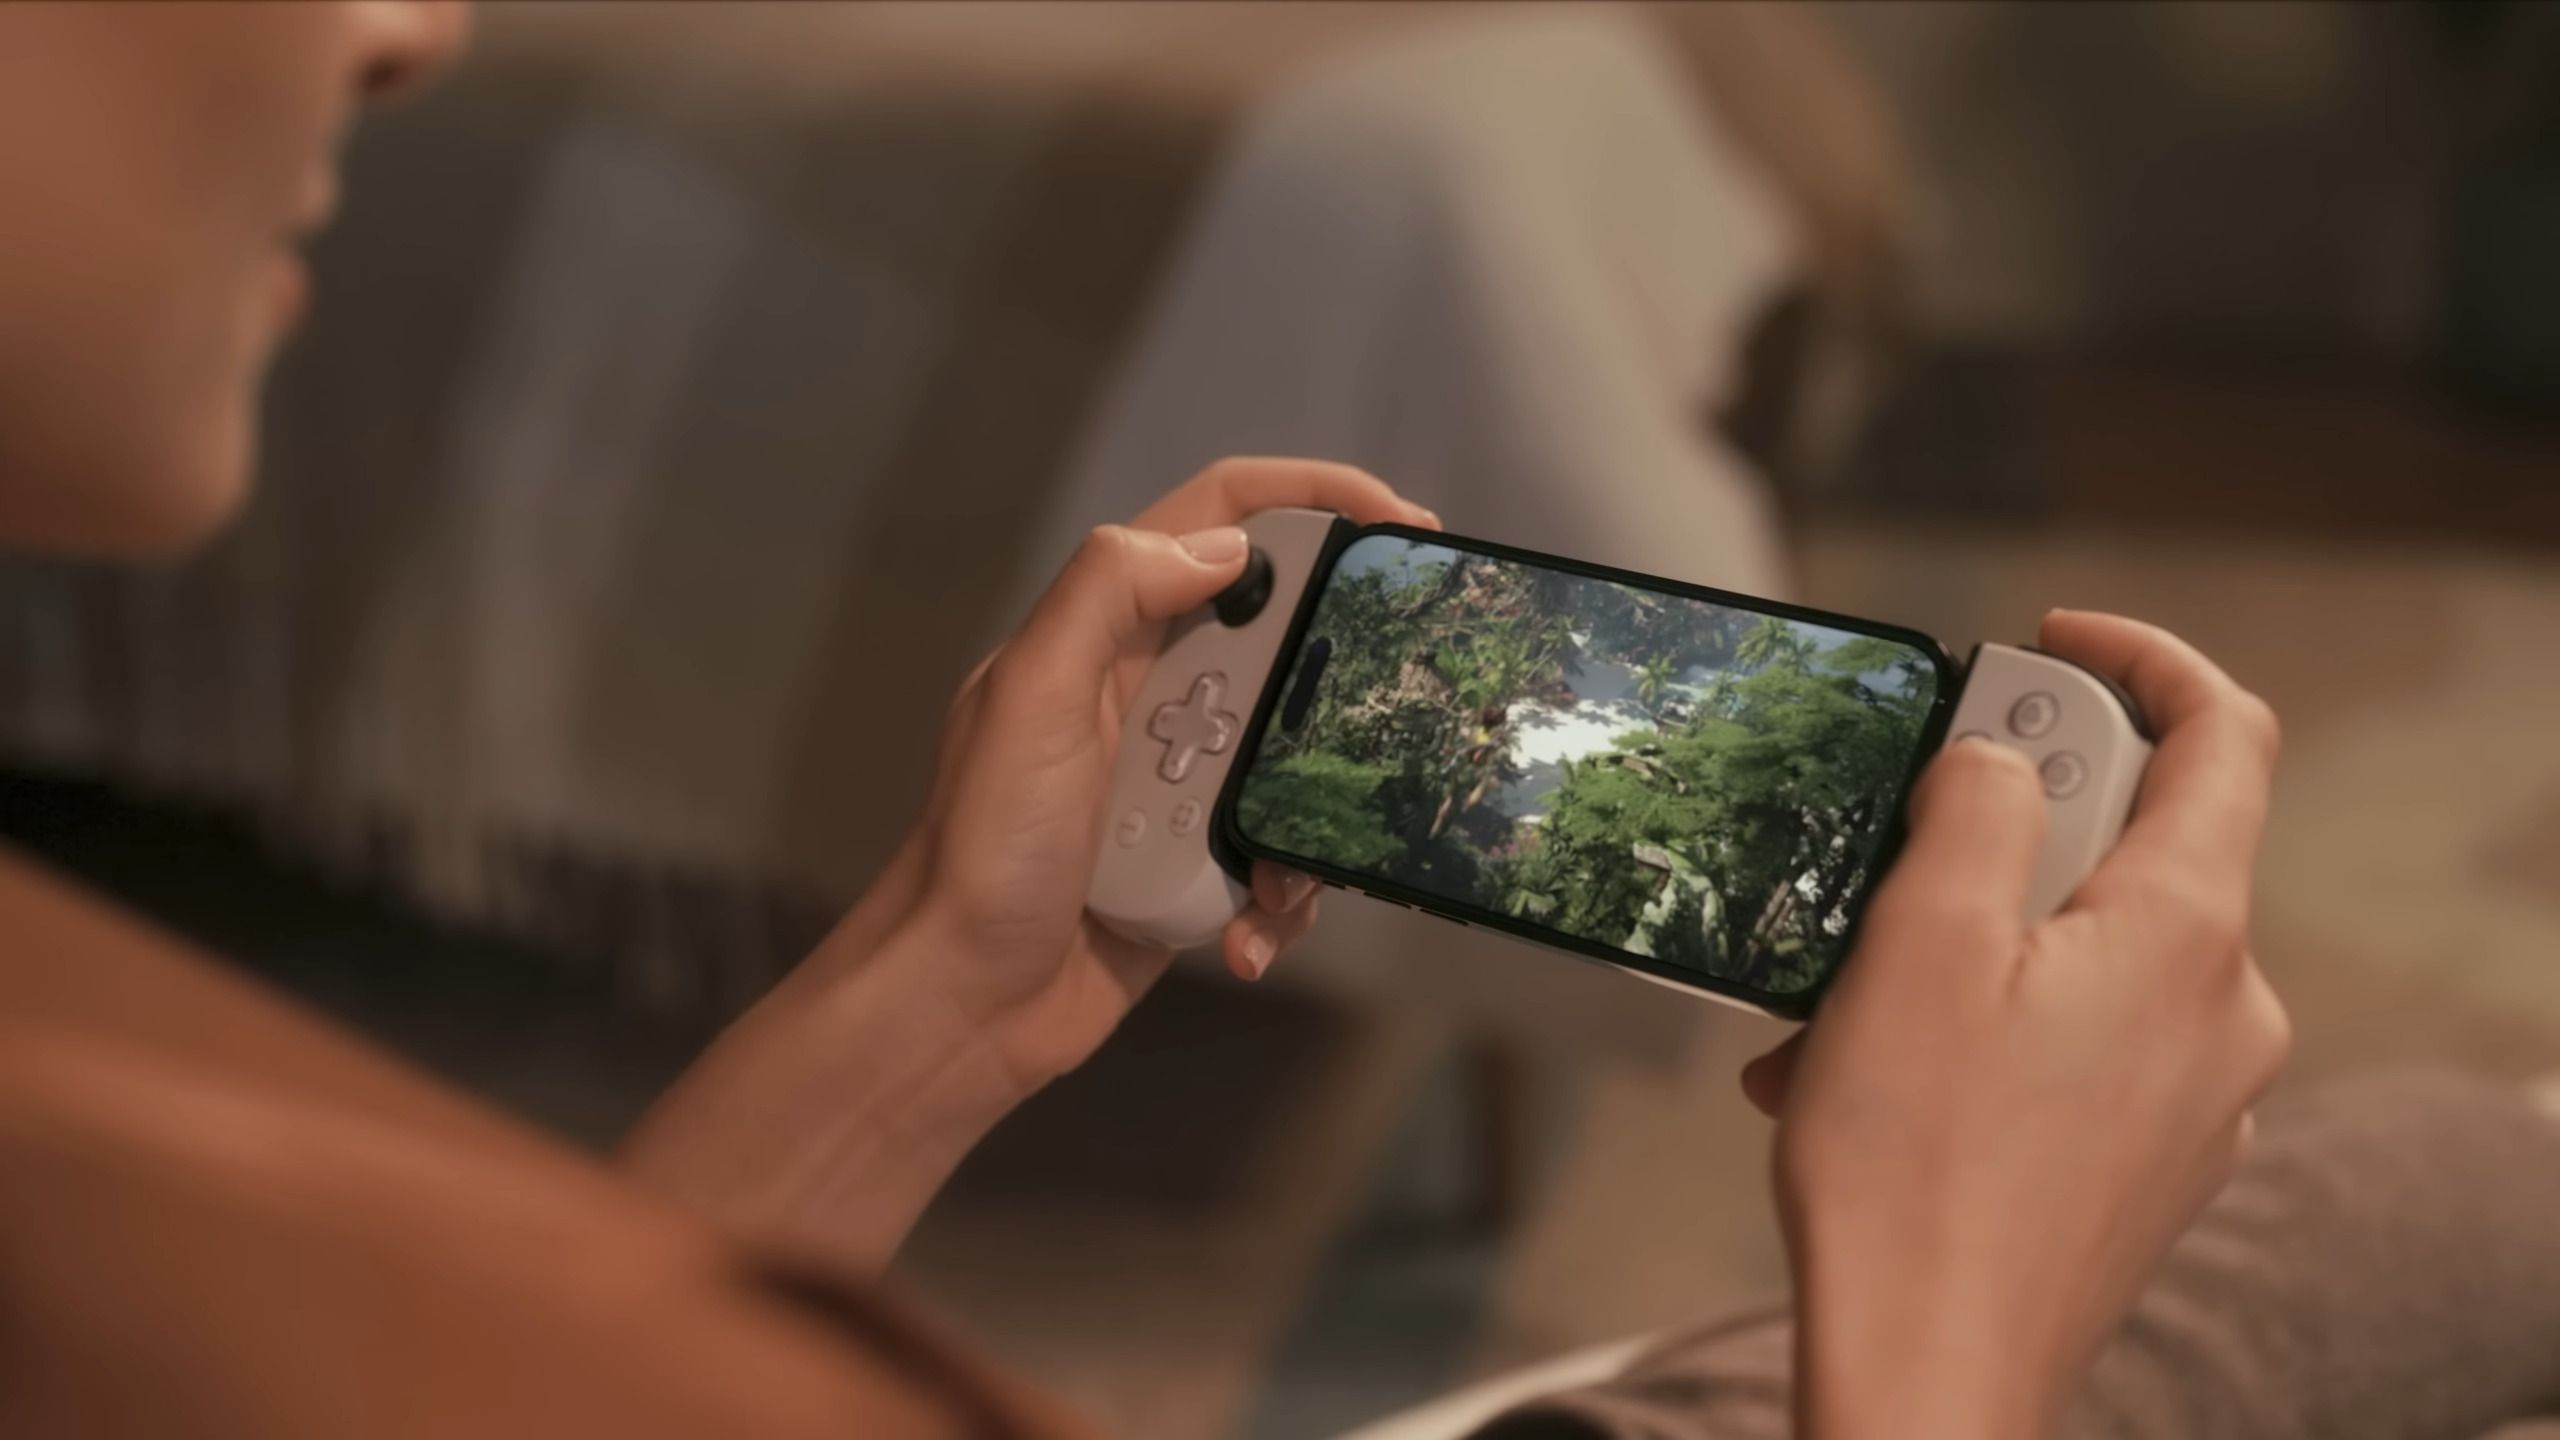 #Sony arbeitet an einer neuen Mobile-Plattform, die auf Free-to-play-Games abzielt